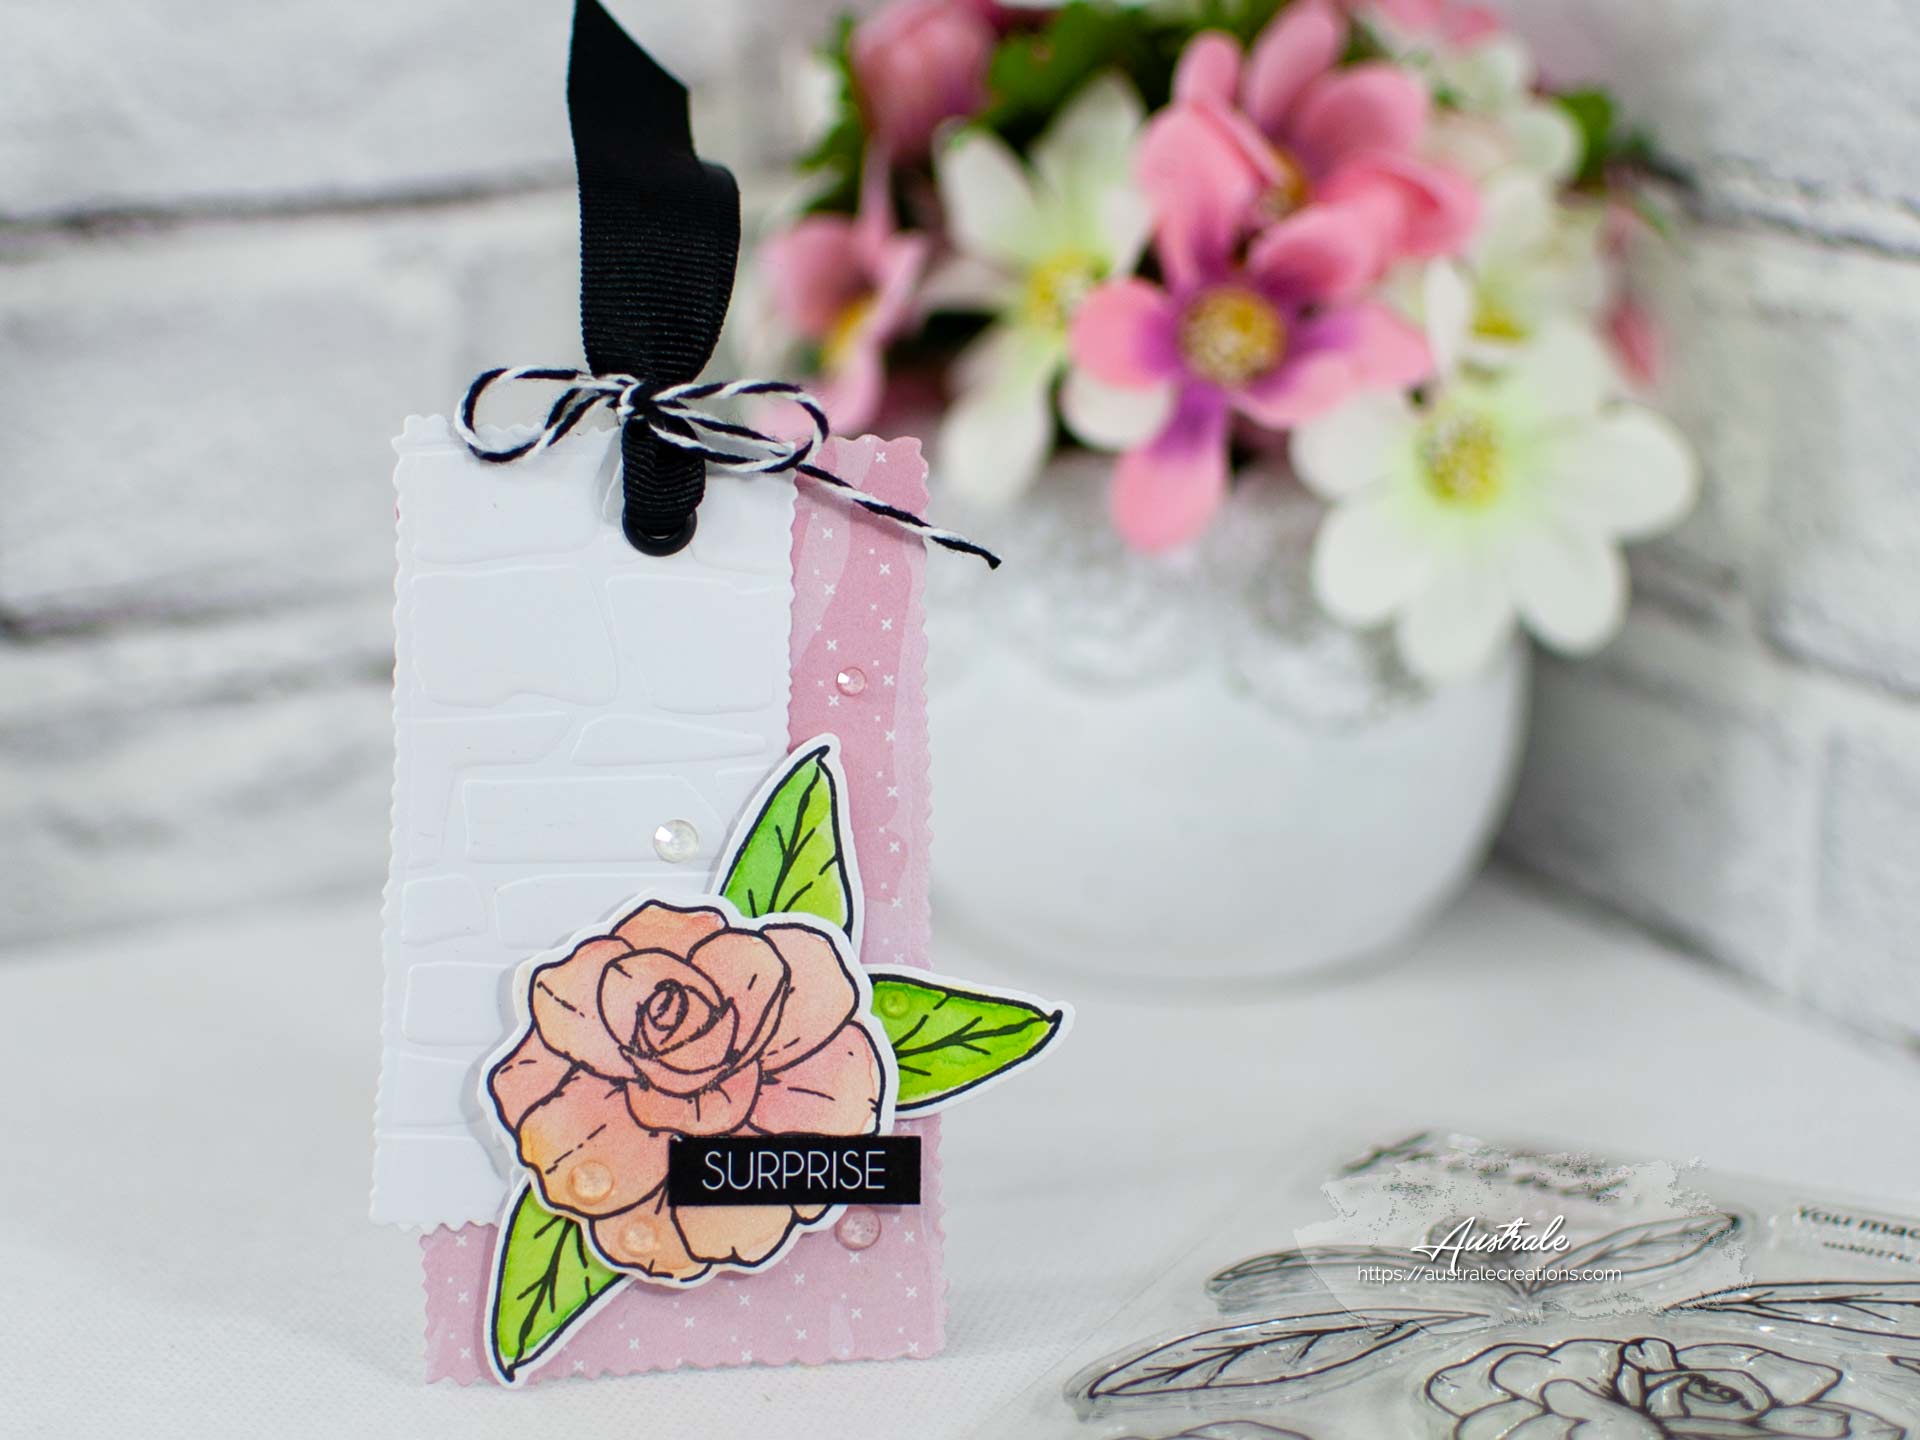 Création d'une étiquette cadeau pour anniversaire. Elle est décorée de fleurs et feuillages mis en couleurs à l'aquarelle dans un combo en rose, blanc et vert.